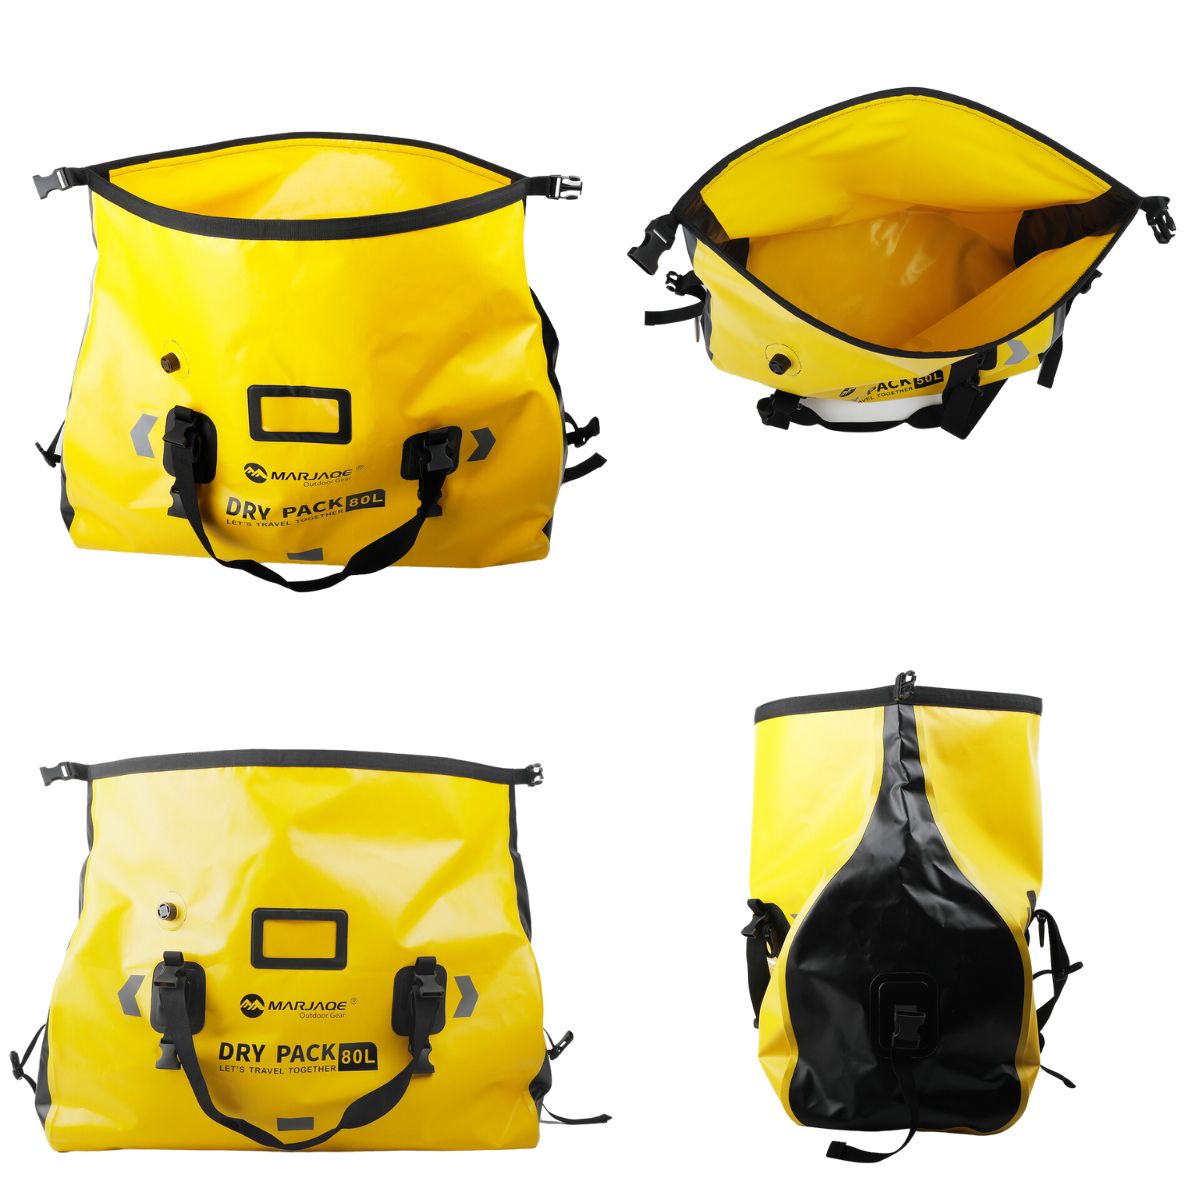 Túi chống nước xe máy túi đựng đồ chống thấm nước chuyên dụng cho các hoạt động thể thao, dã ngoại, phượt, thám hiểm